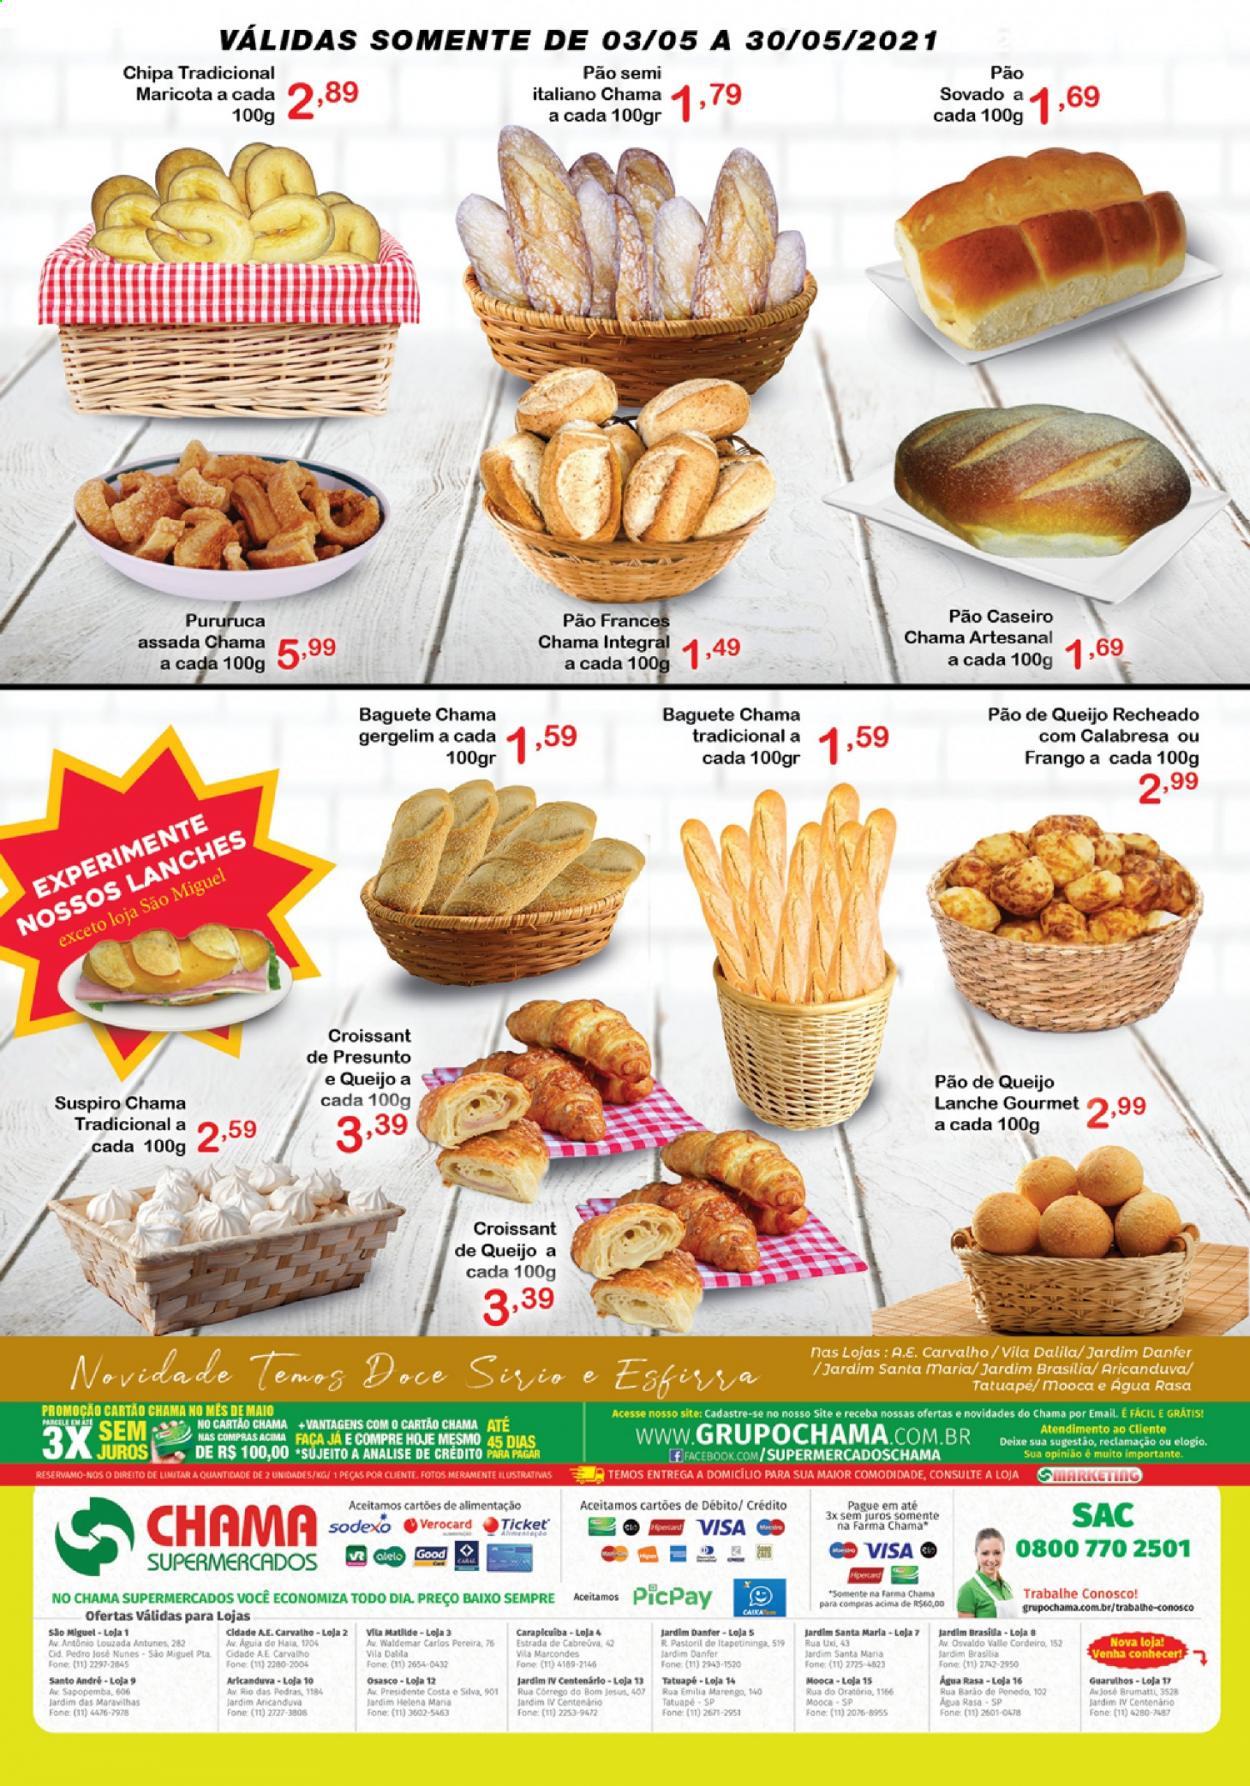 thumbnail - Folheto Chama Supermercados - 03/05/2021 - 30/05/2021 - Produtos em promoção - pão de queijo, pão, baguete, croissant, cordeiro, presunto, faca. Página 2.